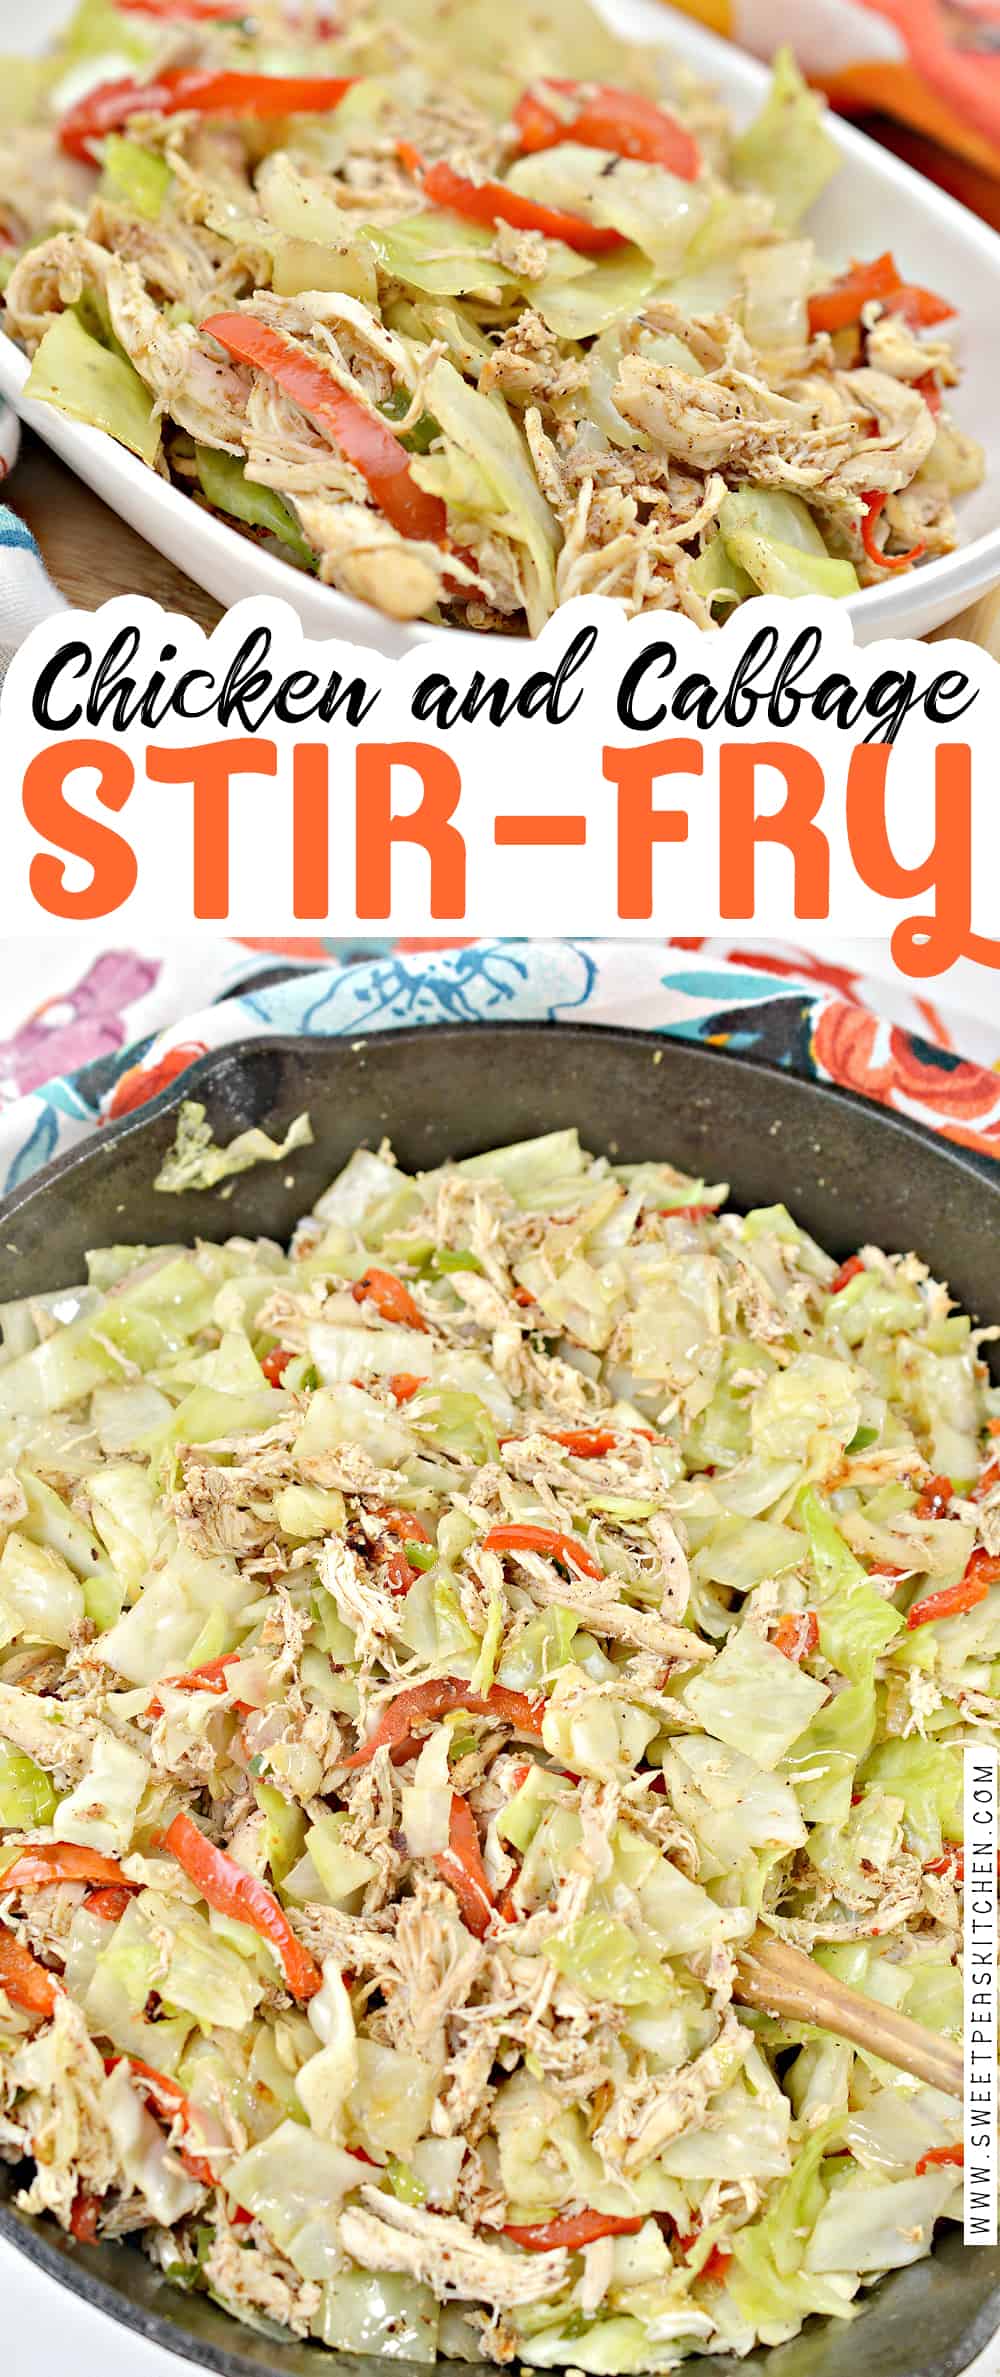 Chicken and Cabbage Stir Fry